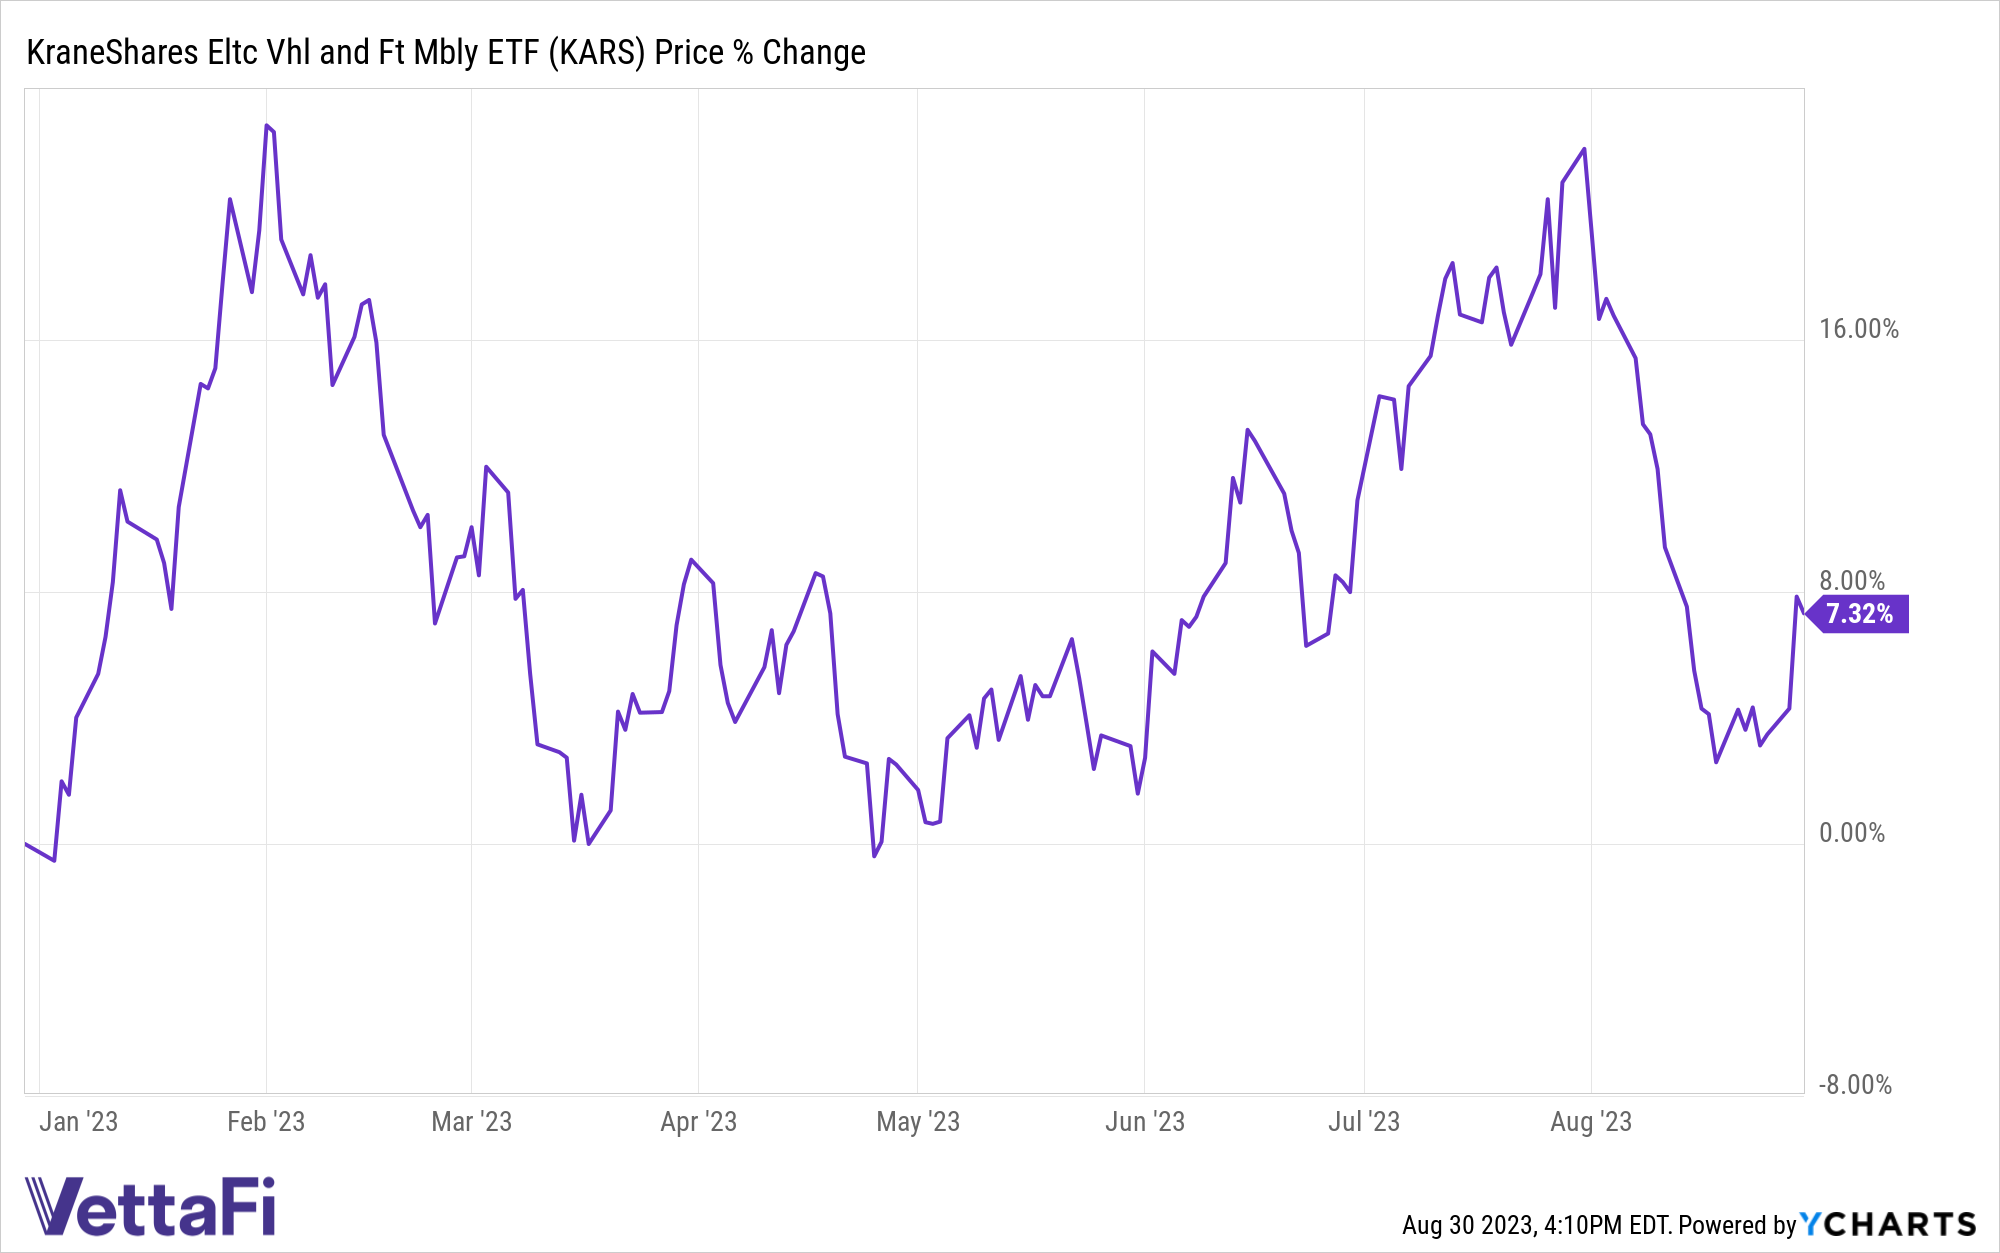 Chart of price returns YTD for KARS, up 7.32%. 